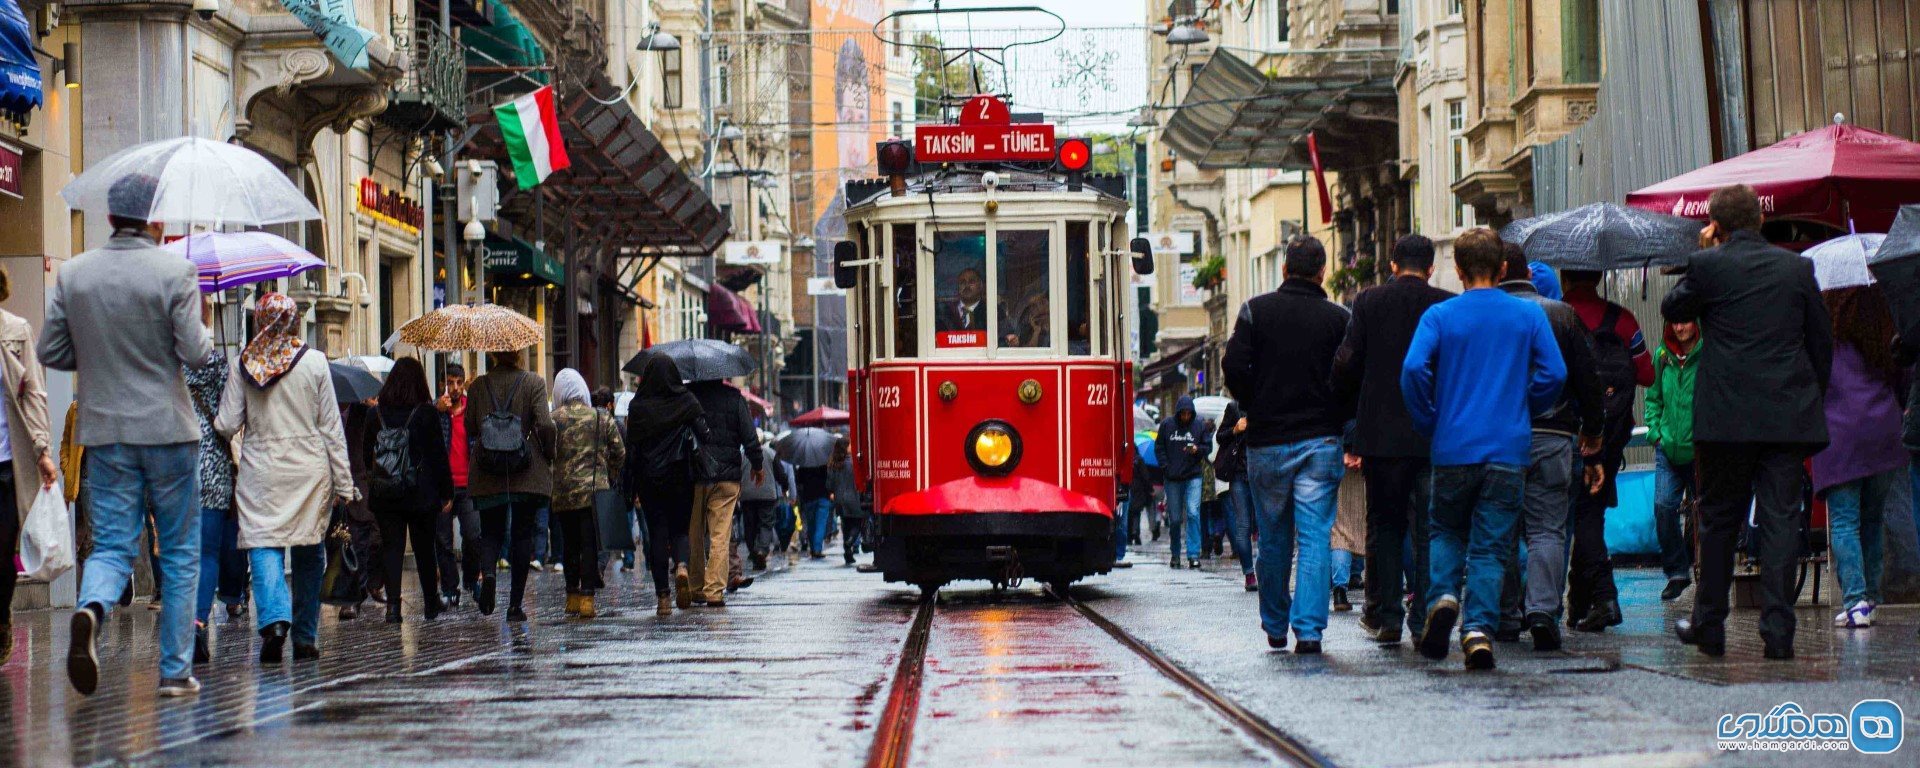 گرافیک های شهری در استانبول